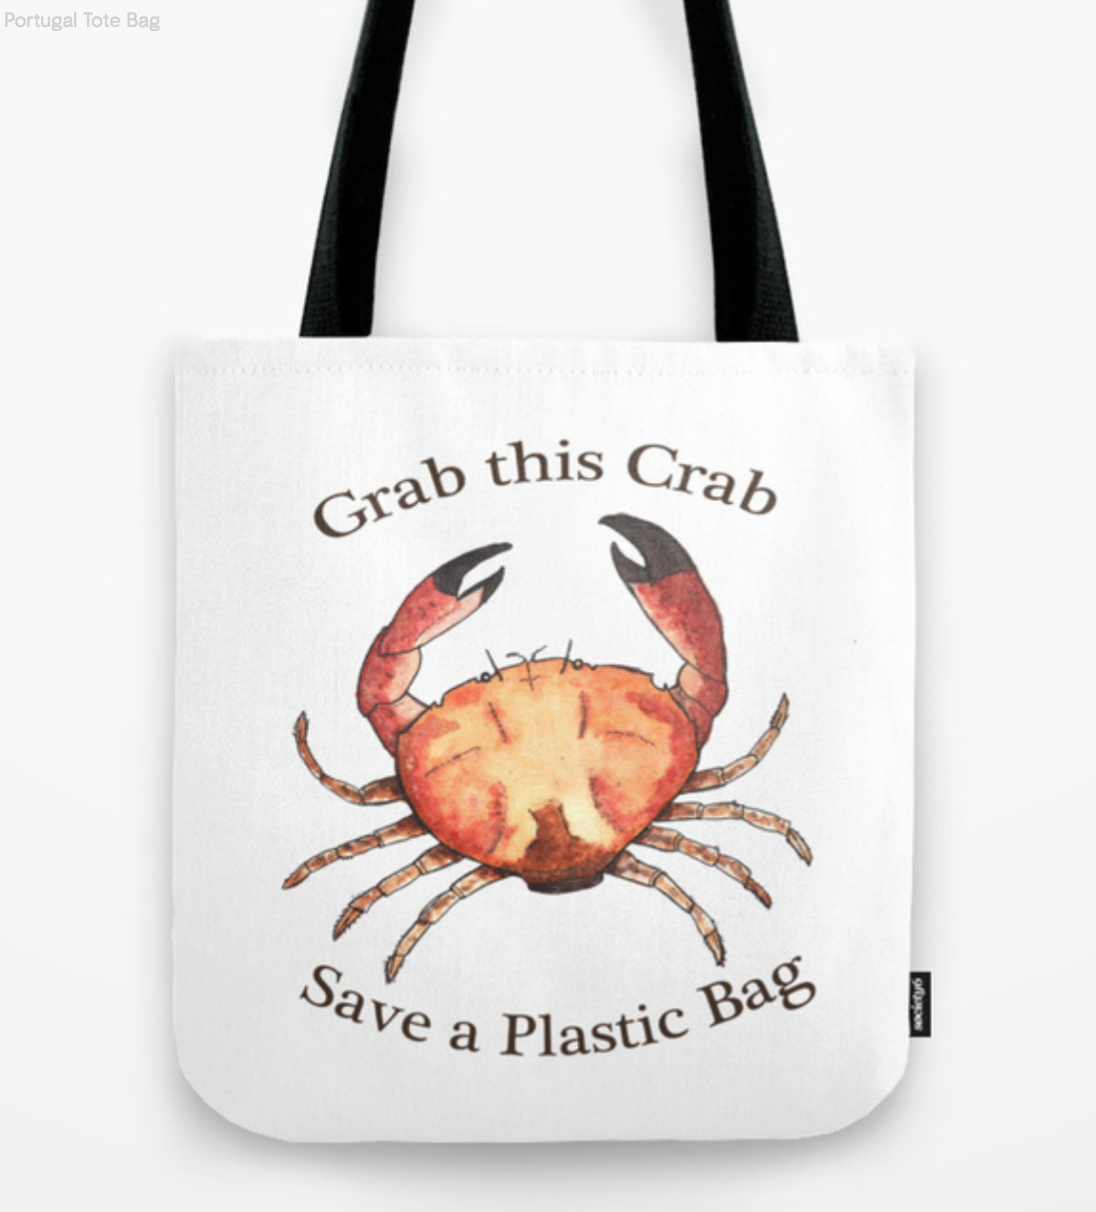 Crab bag!